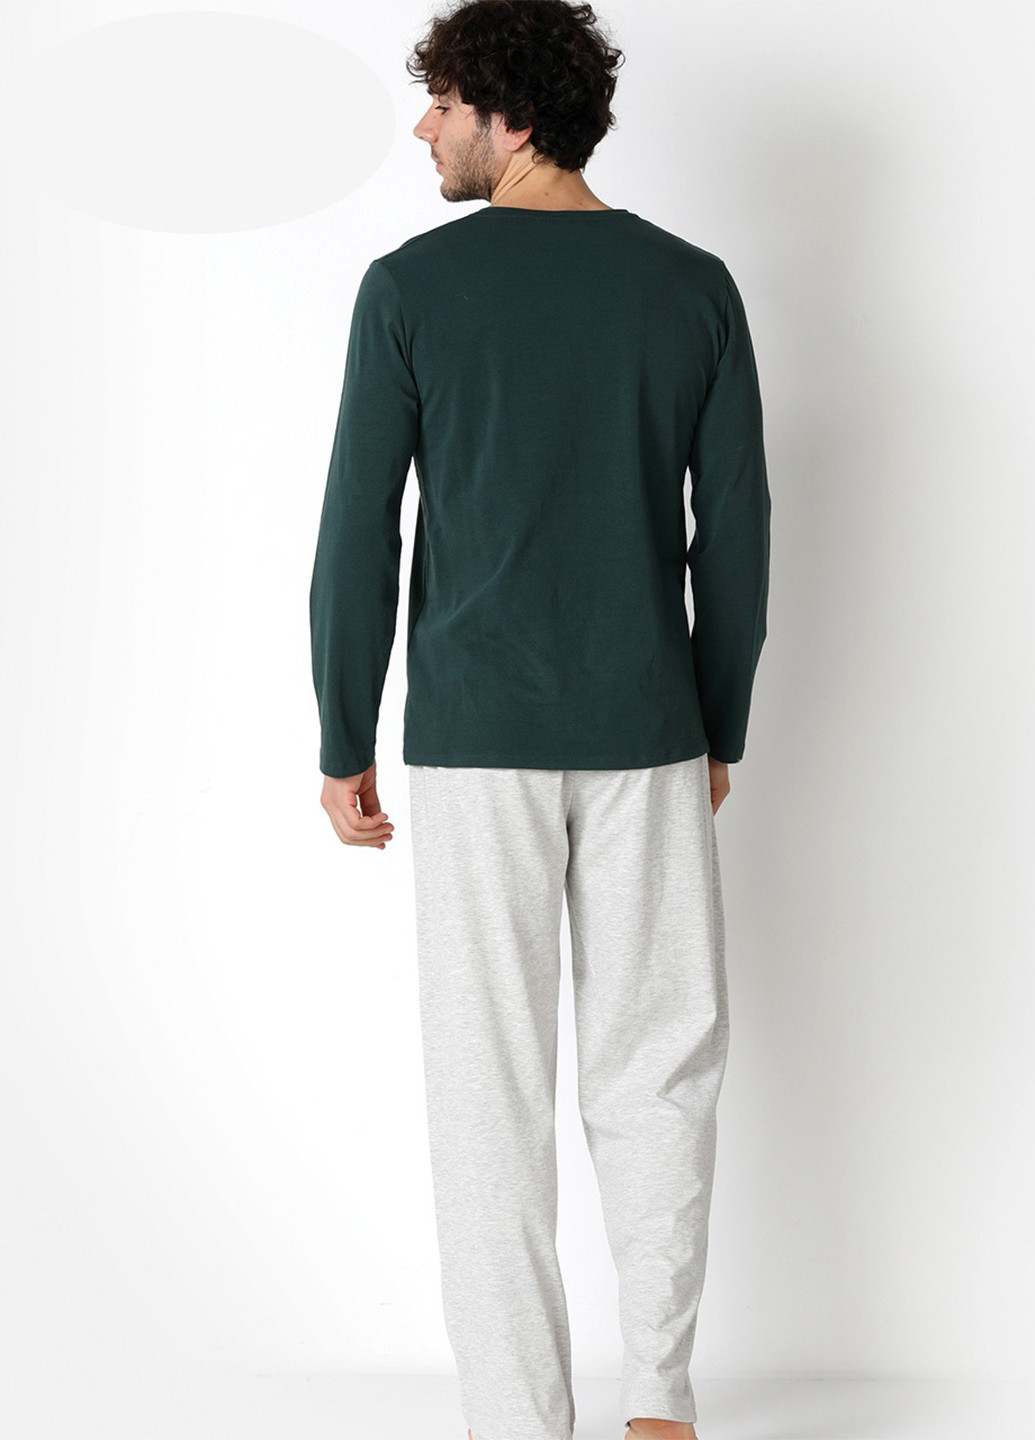 Пижама (лонгслив, брюки) DoReMi лонгслив + брюки меланж темно-зелёная домашняя хлопок